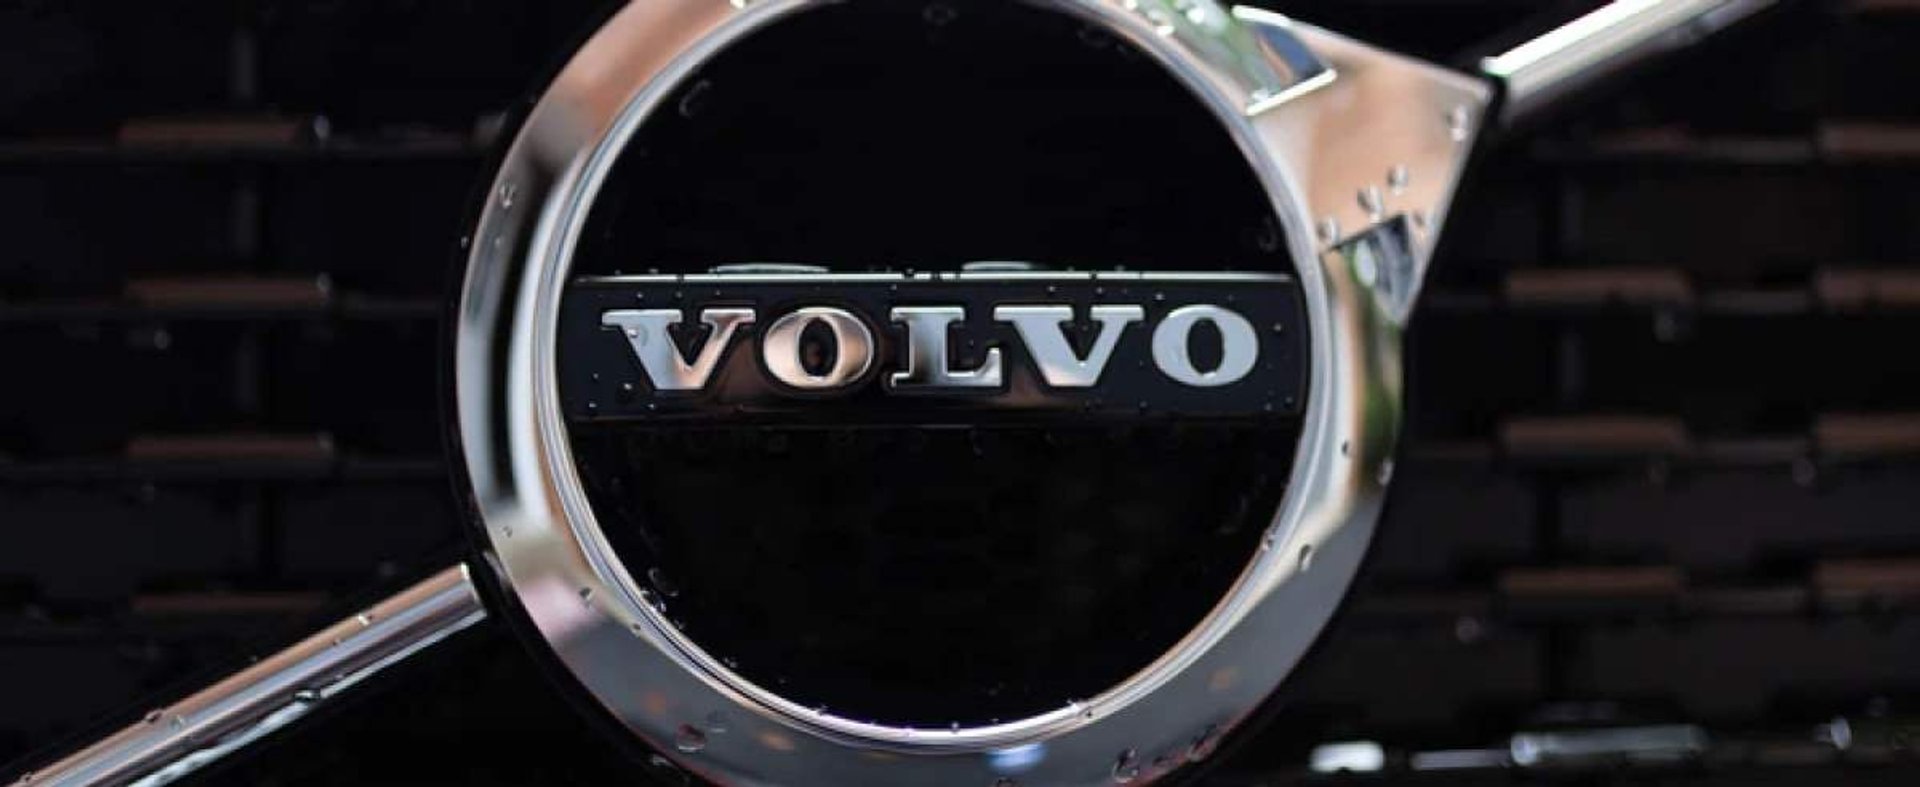 Volvo Geely rozwój firmy